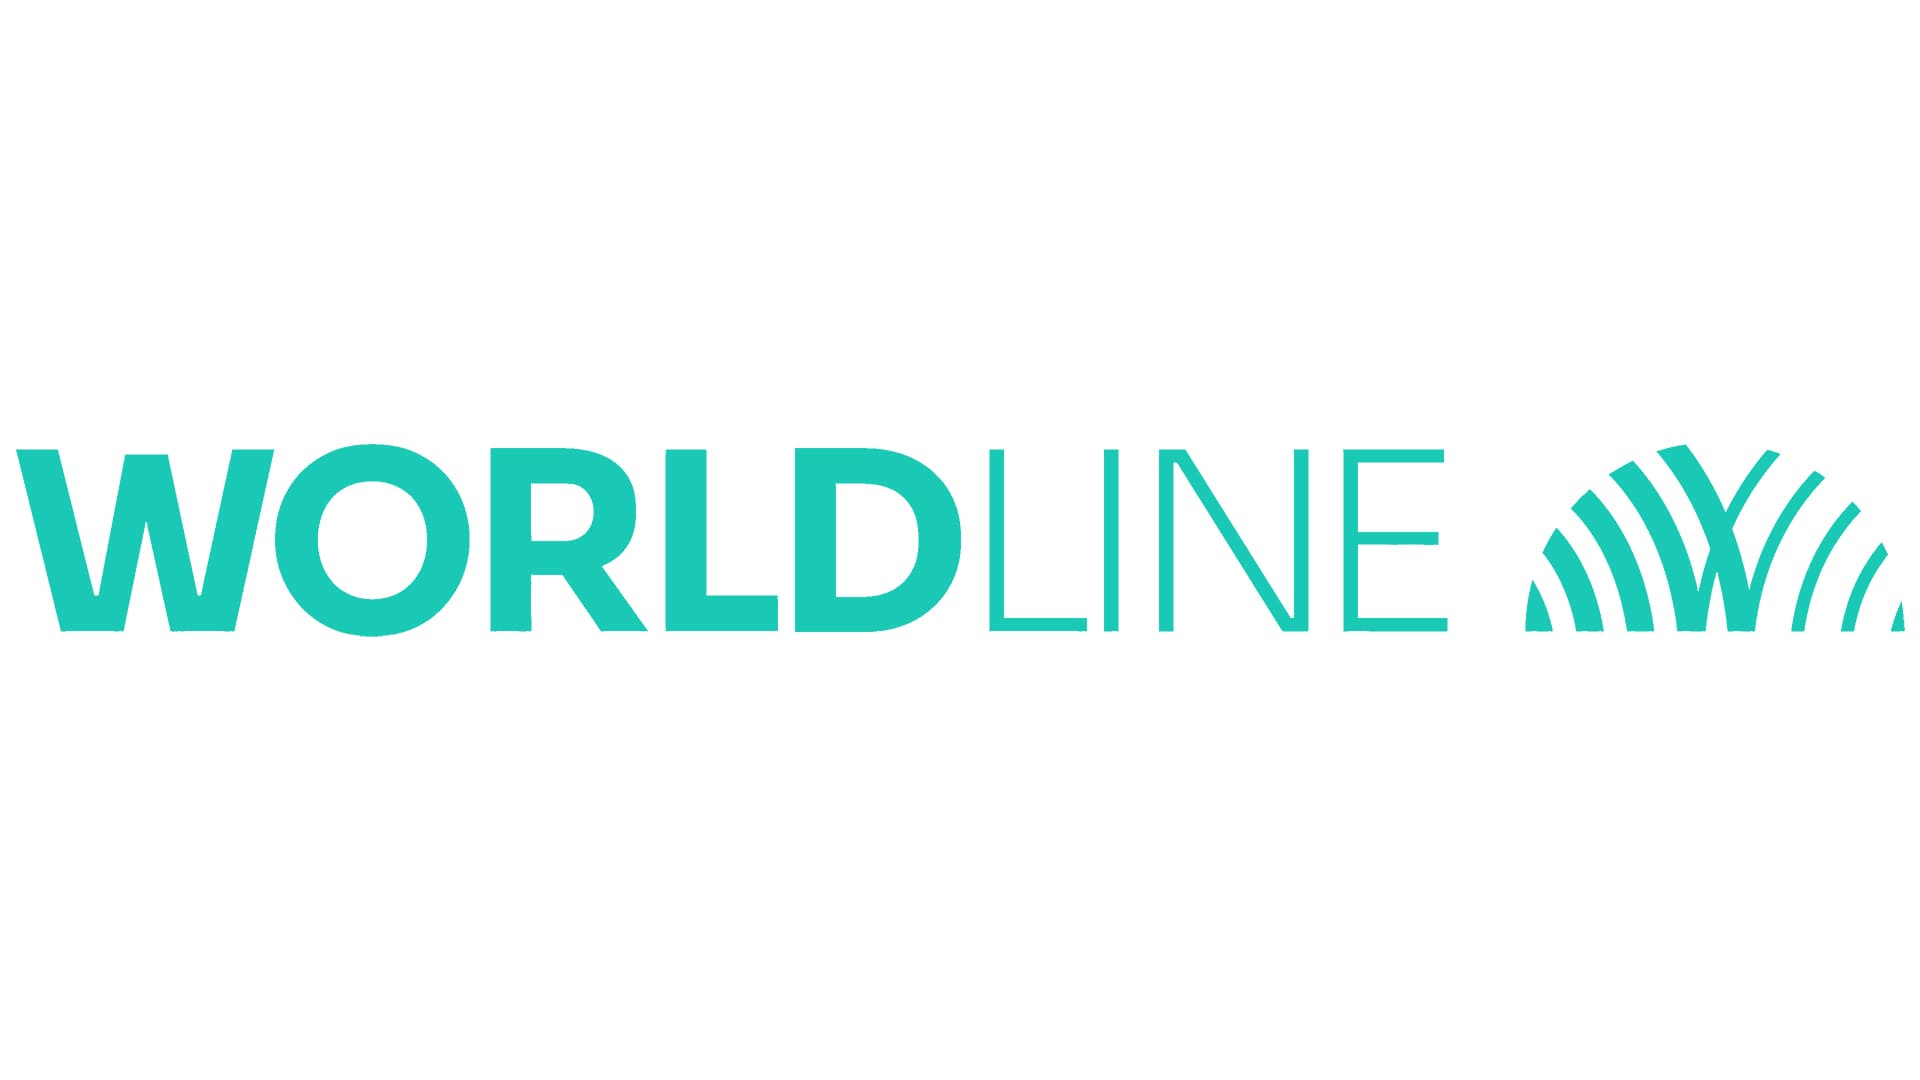 Atos Worldline